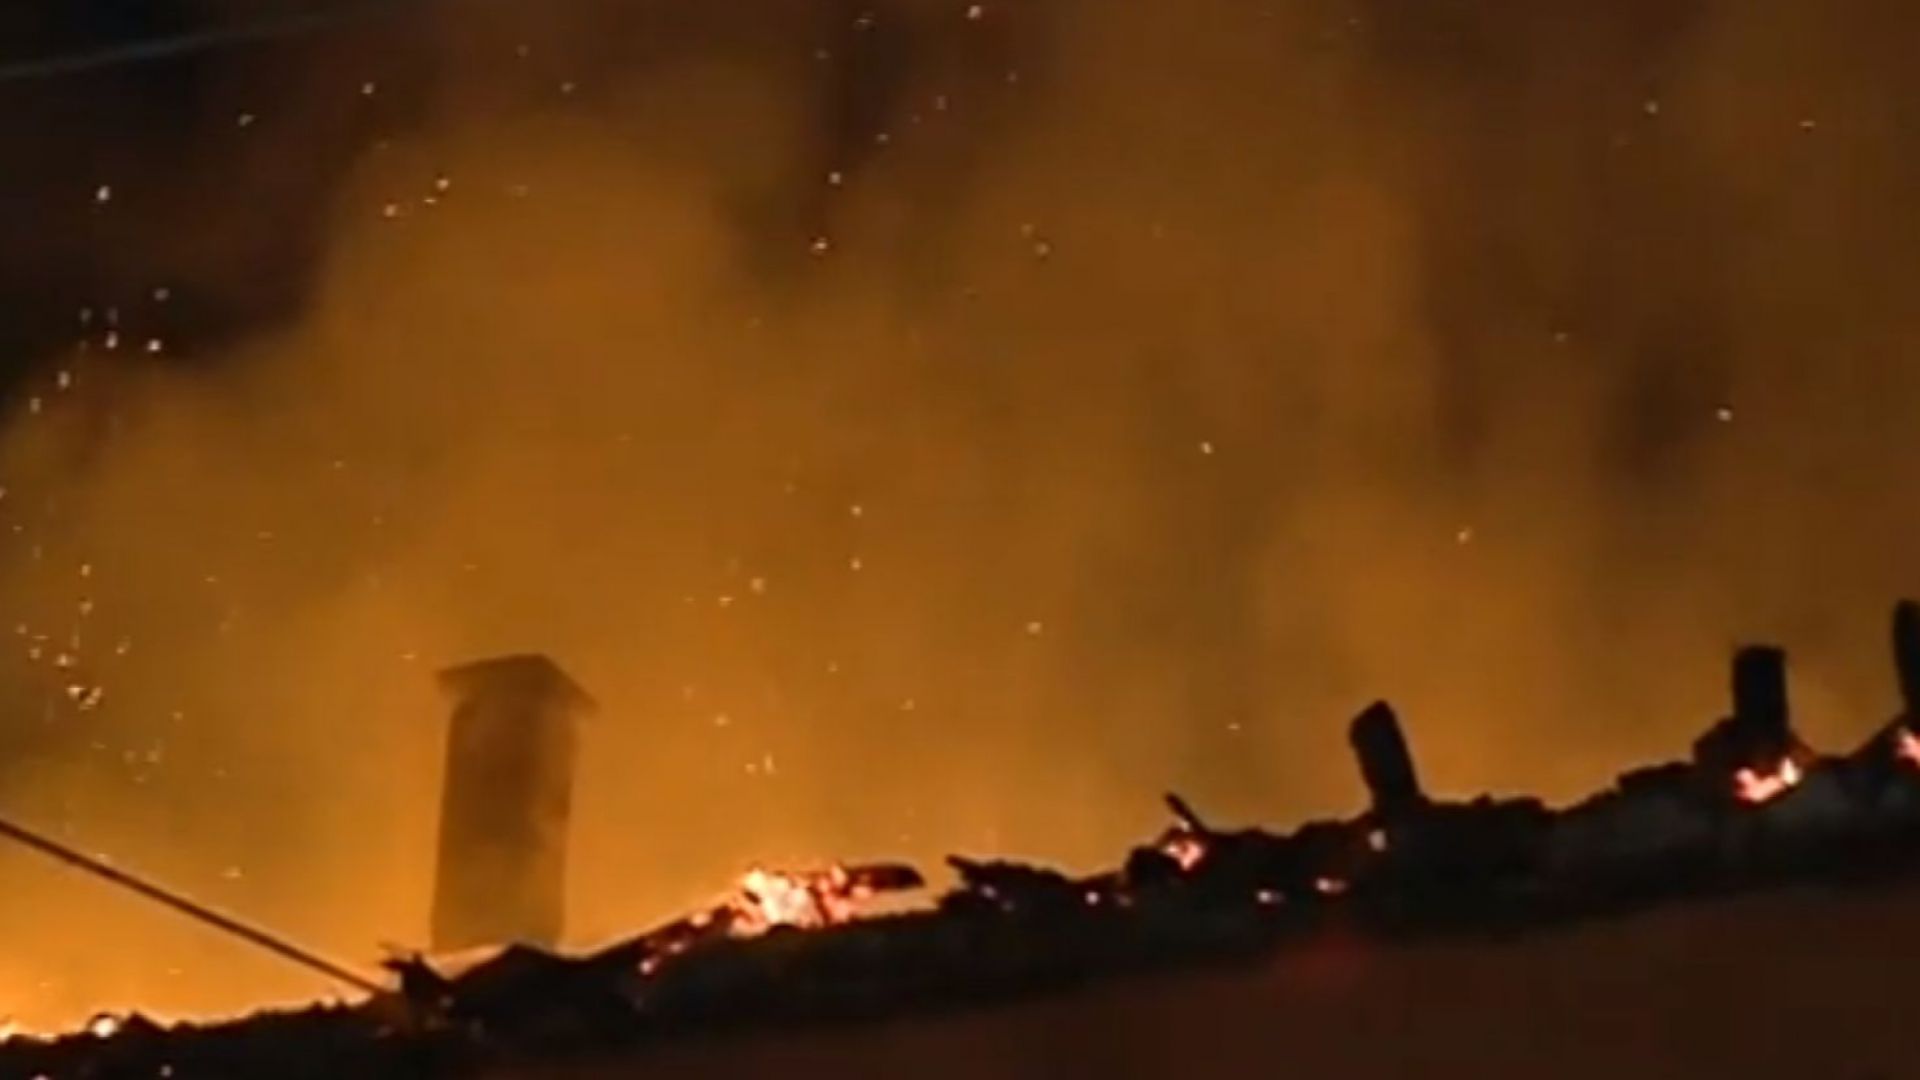 Пожар остави семейства без дом в Божурище Сигналът на 112